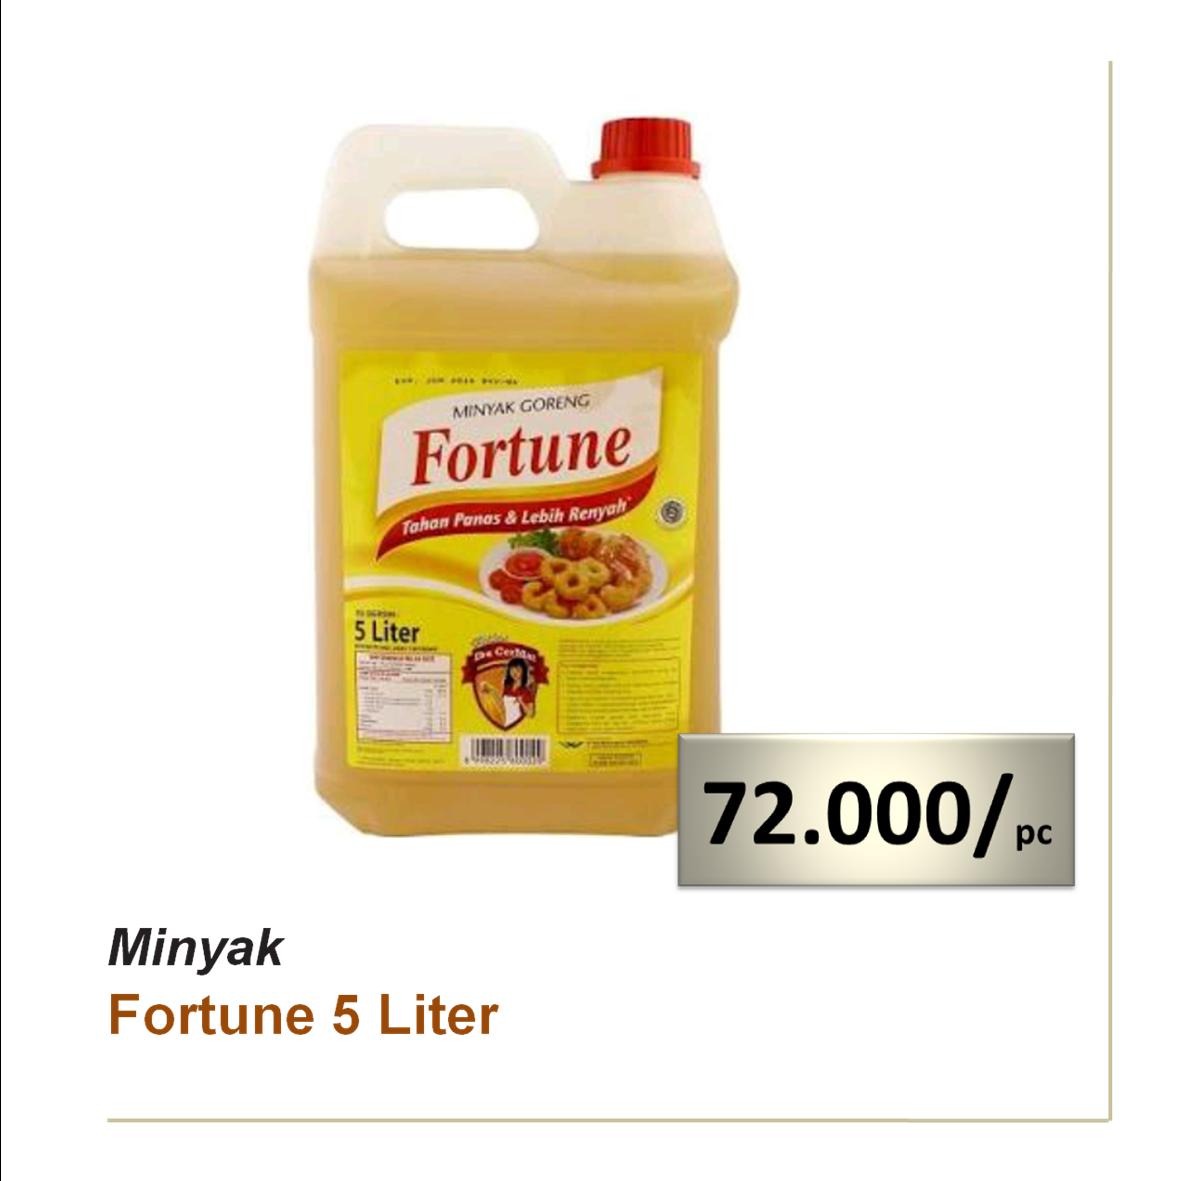 Minyak Fortune 5 Liter